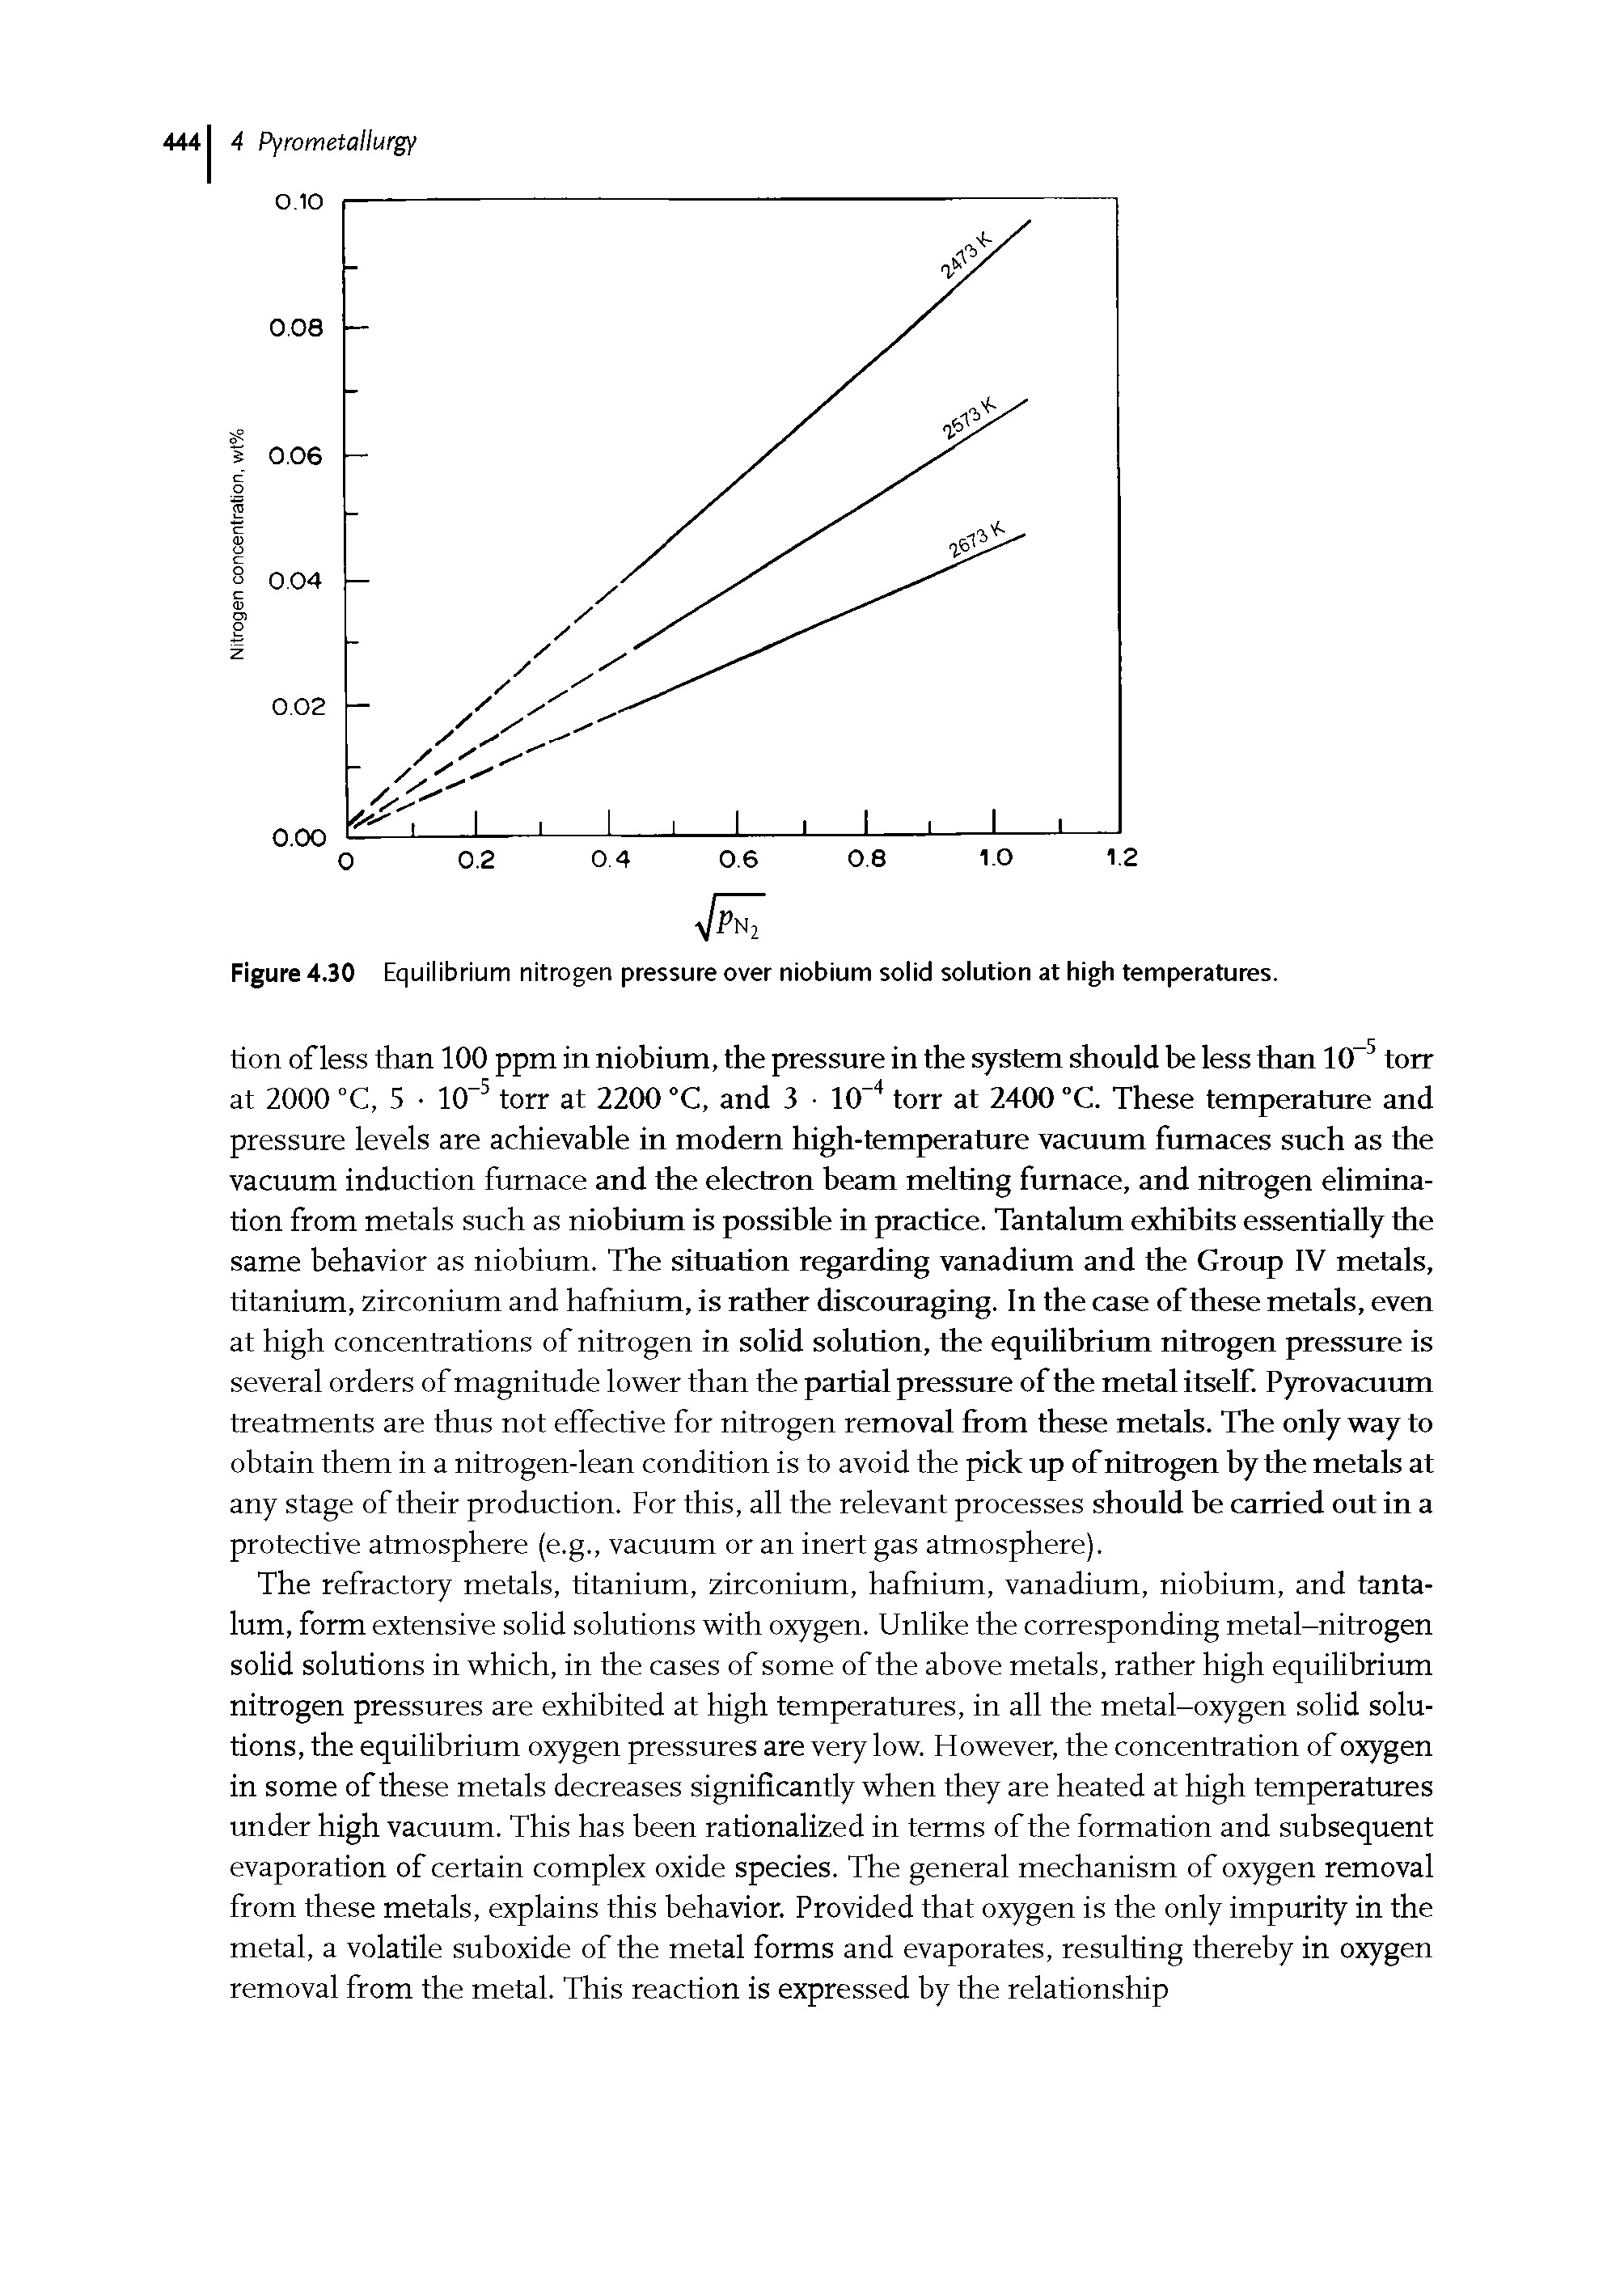 Figure 4.30 Equilibrium nitrogen pressure over niobium solid solution at high temperatures.